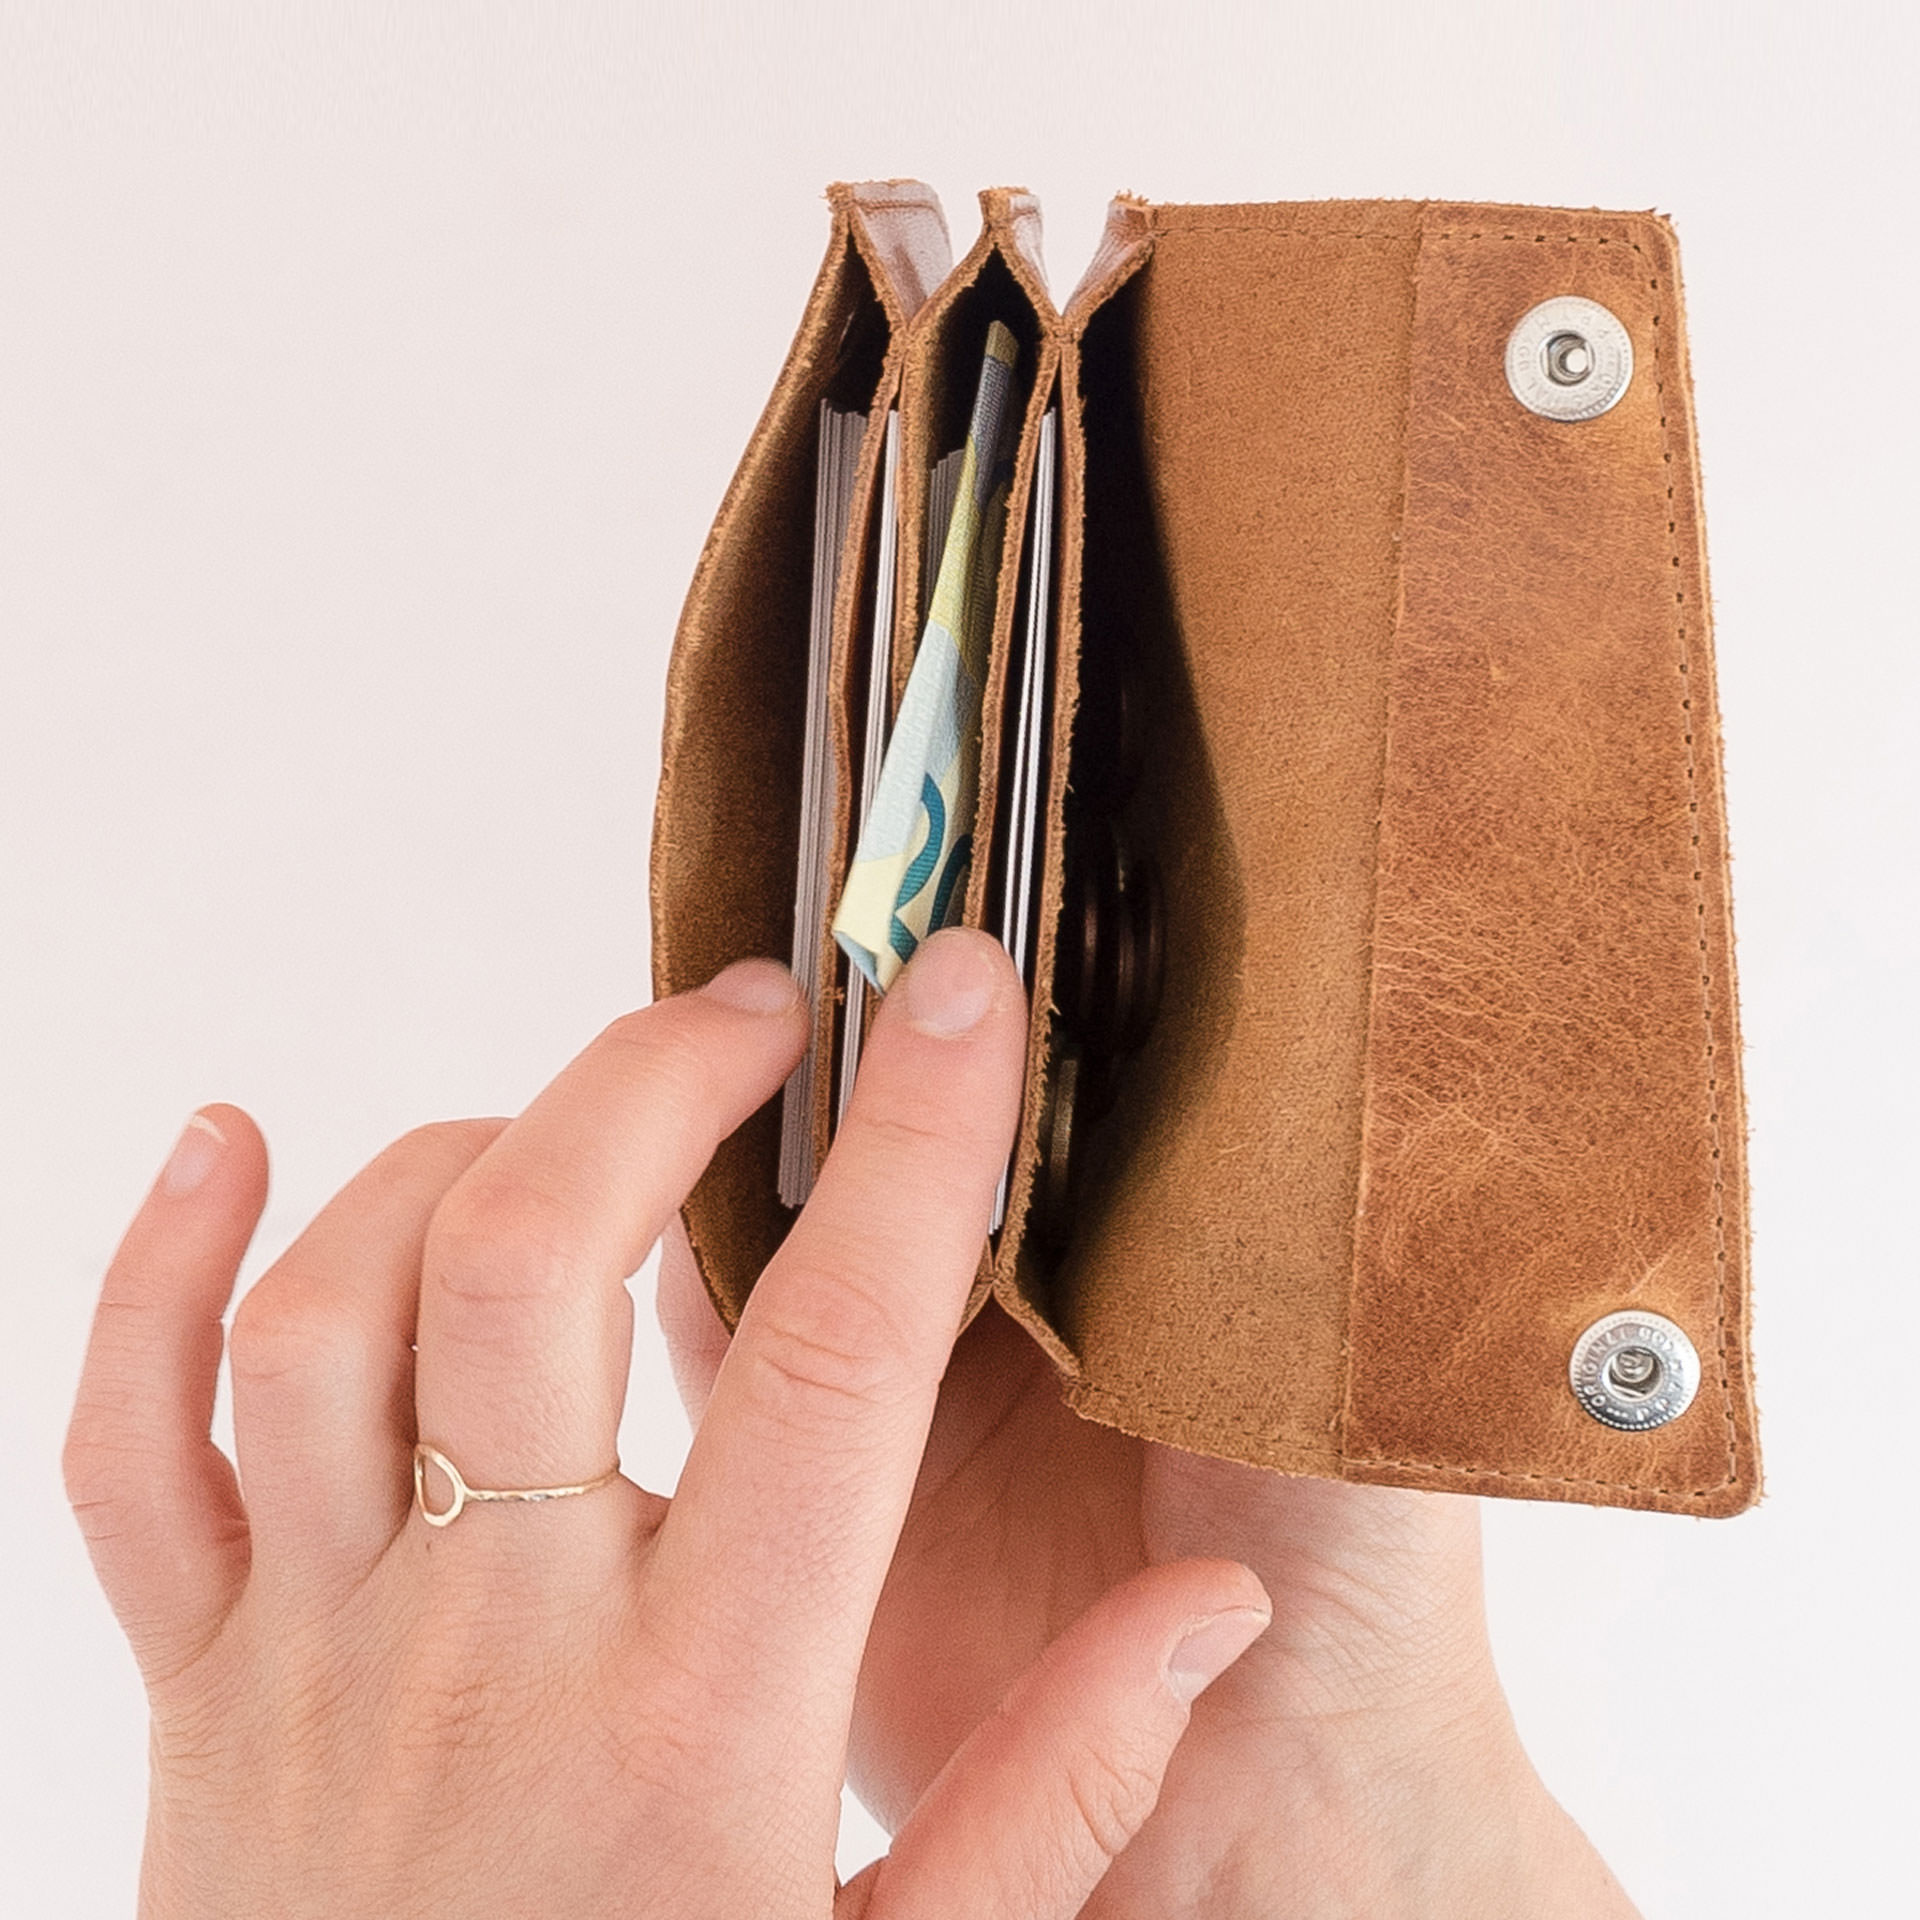 Minimalistisches Portemonnaie ENO aus Naturleder in Cognac geölt von innen gefüllt mit Karten, Geldscheinen und Münzen